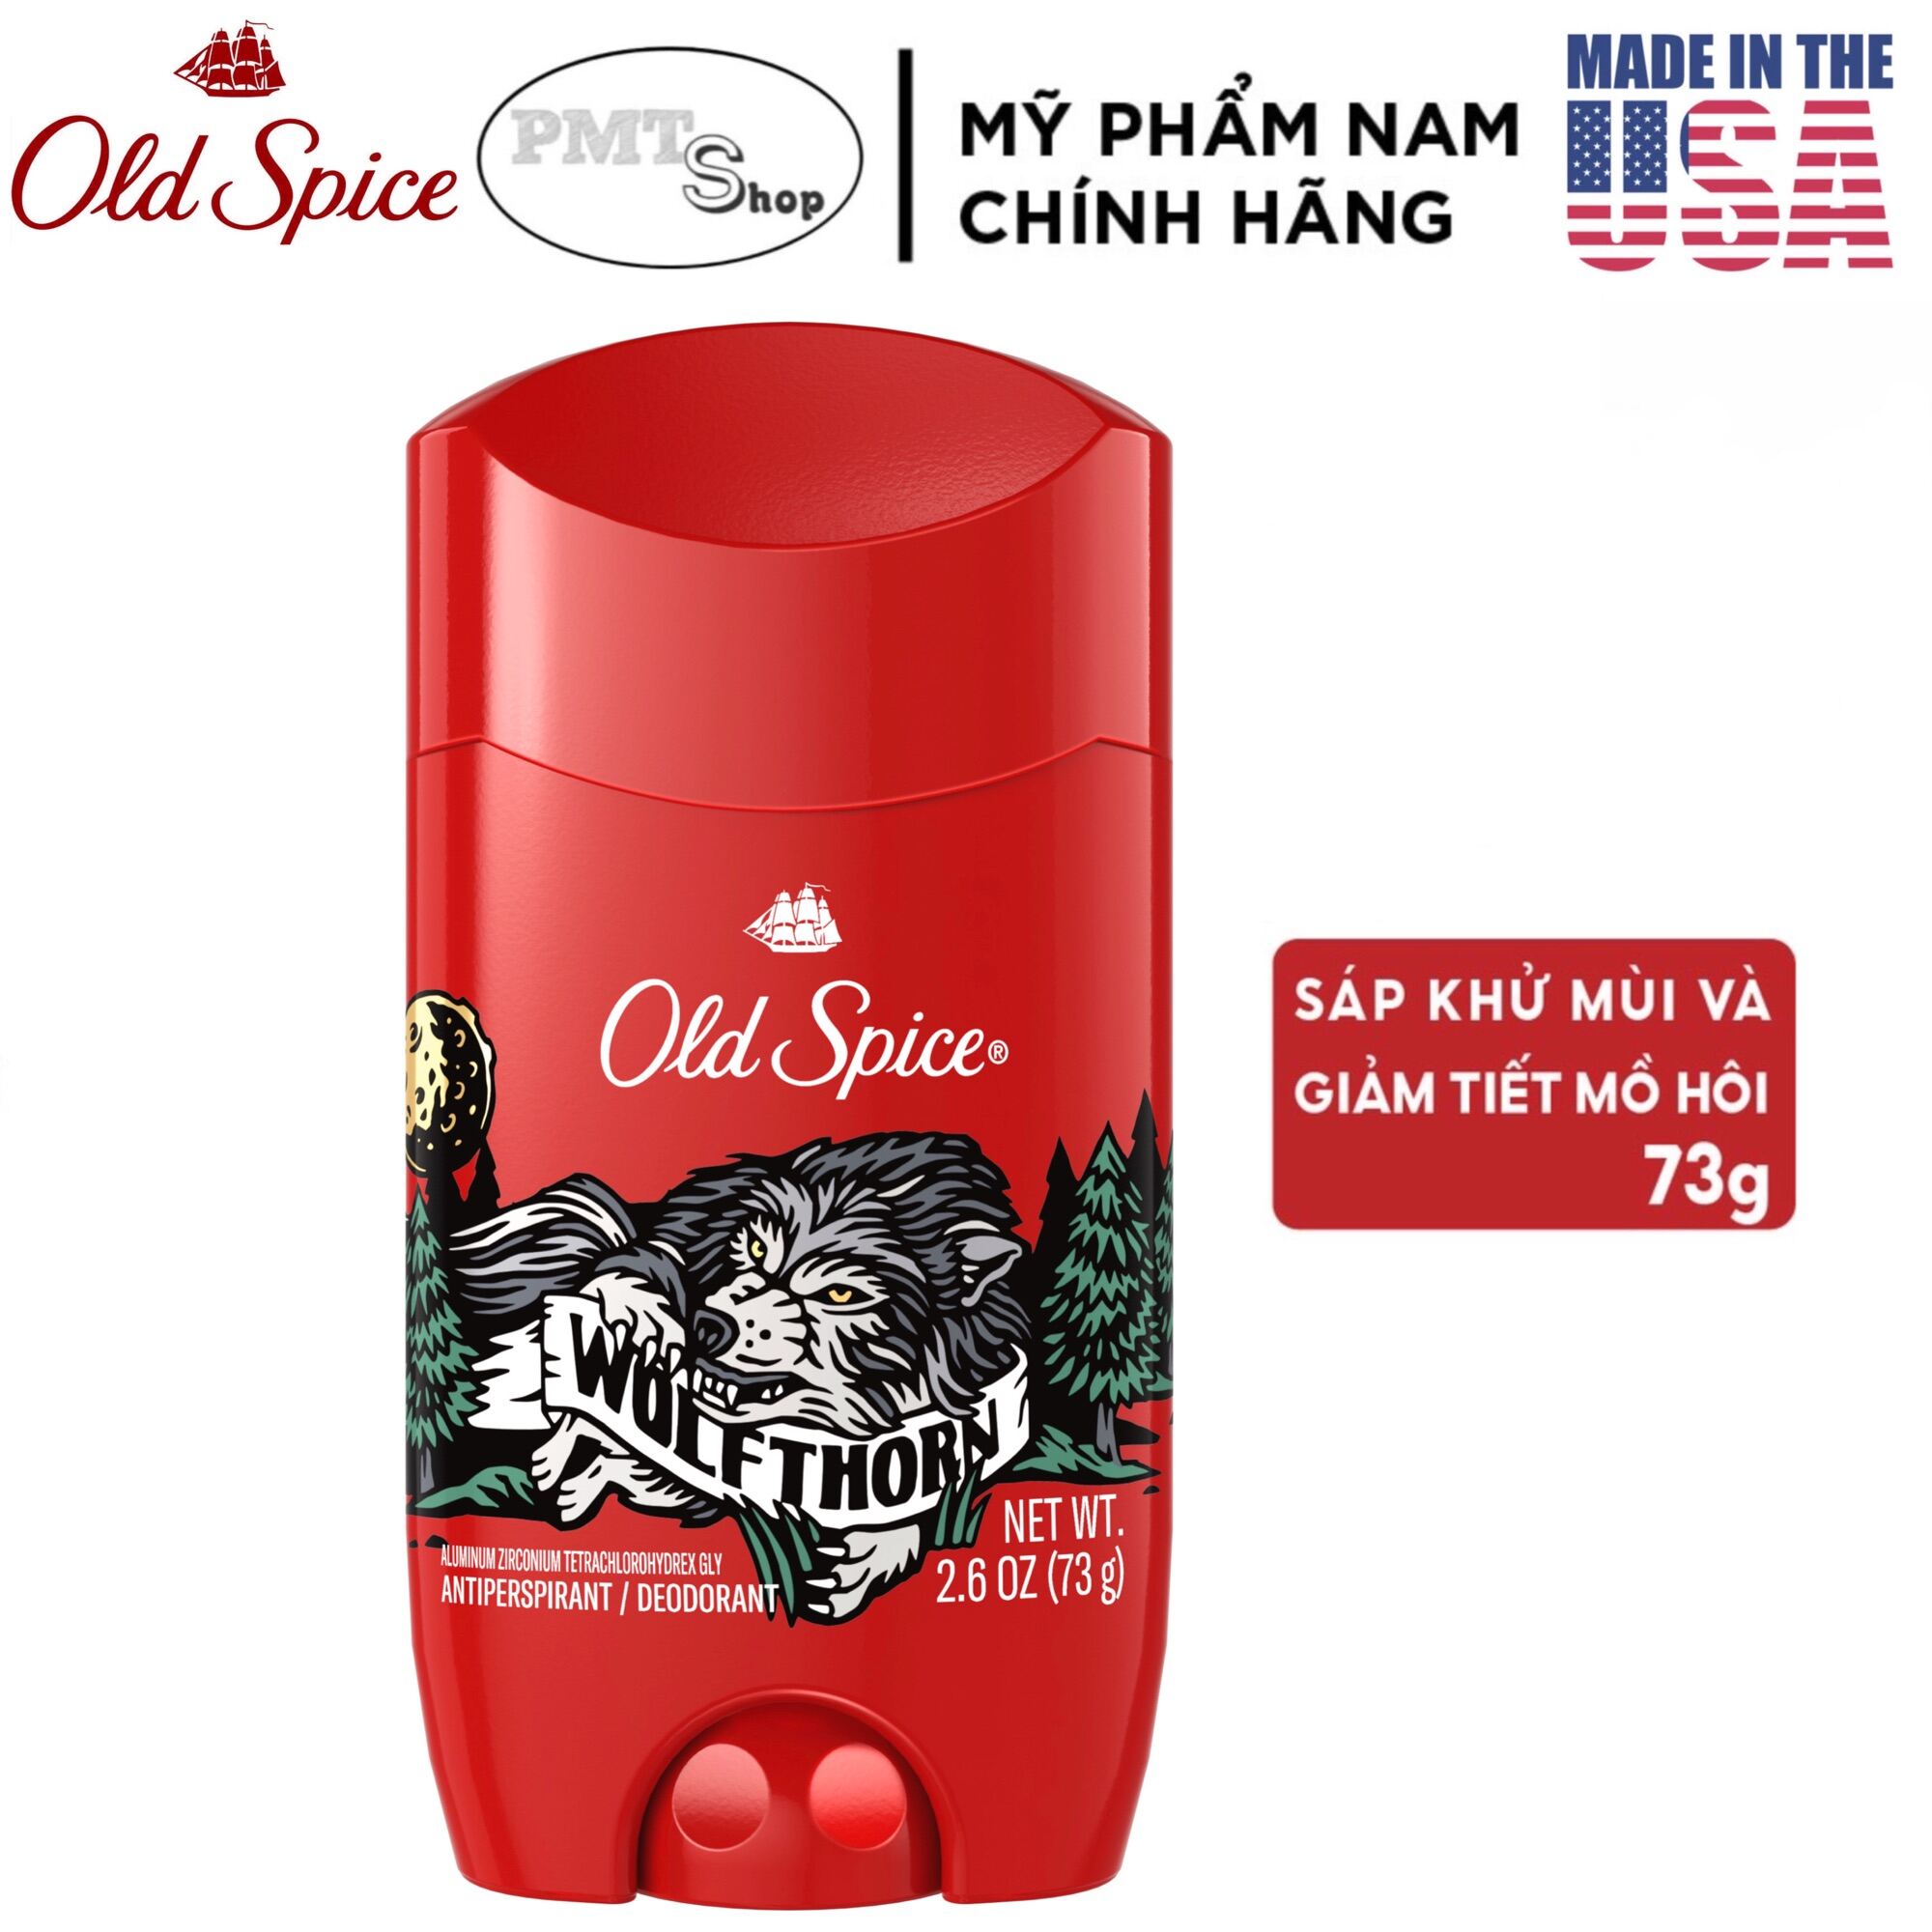 [USA] Lăn sáp khử mùi nam Old Spice Wolfthorn 73g (sáp trắng) ngăn mồ hôi Wild Collection - Mỹ thumbnail